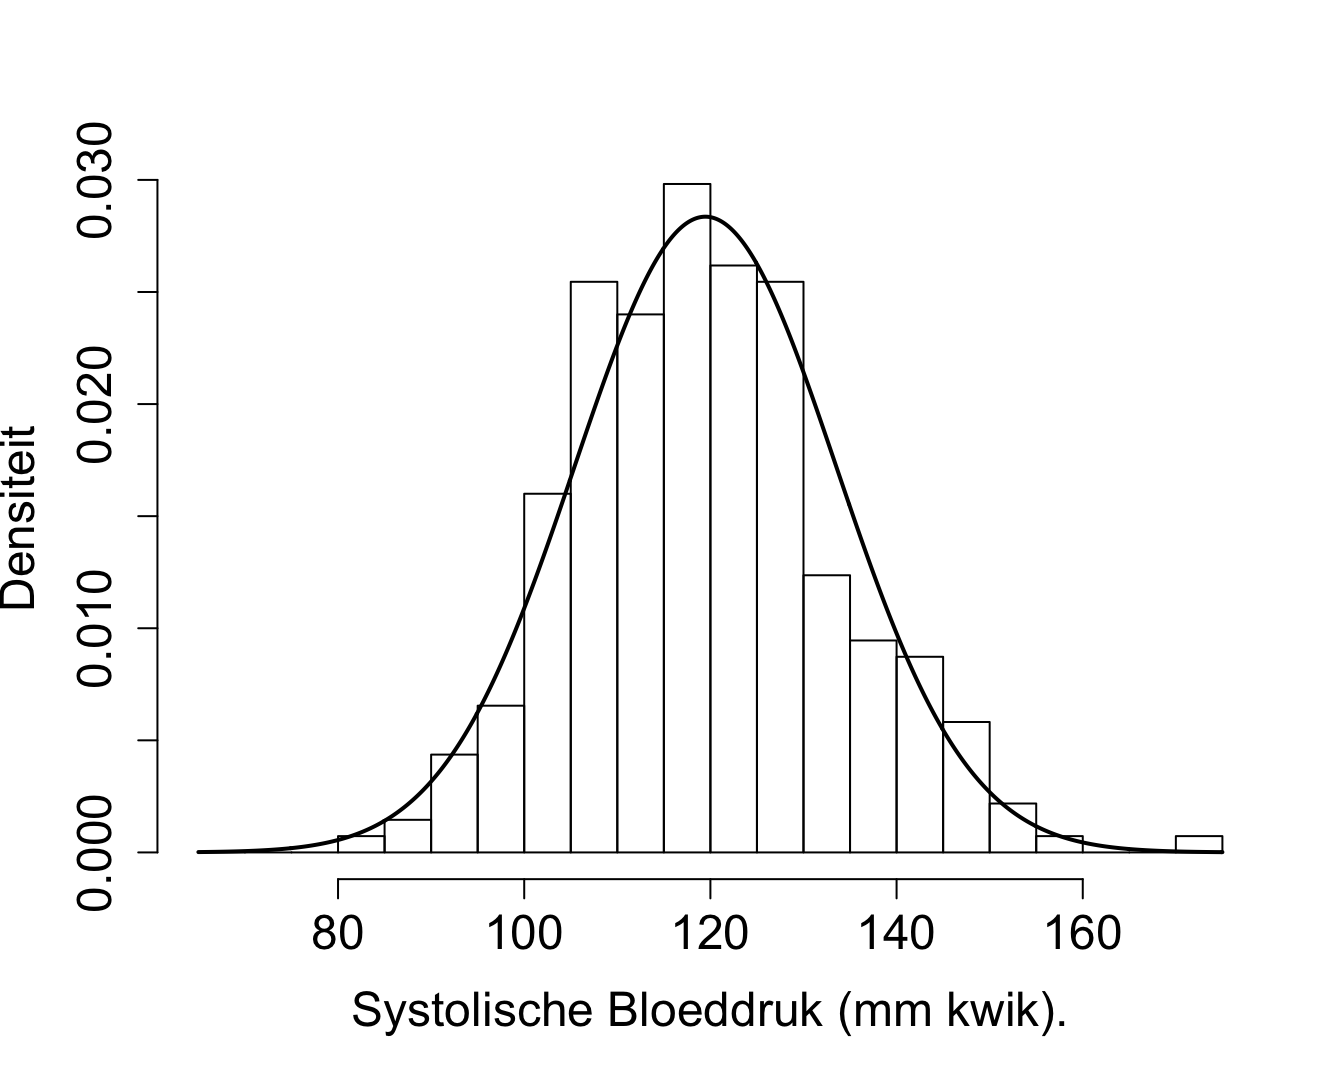 Weergave van de verdeling voor de systolische bloeddruk van gezonde personen tussen 40-65 jaar geschat aan de hand van een histogram o.b.v. de geobserveerde steekproef in de NHANES studie en a.d.h.v. een normale verdeling met geschat gemiddelde 120.4 mm Hg en geschatte variantie 129.8 (zwarte volle lijn)